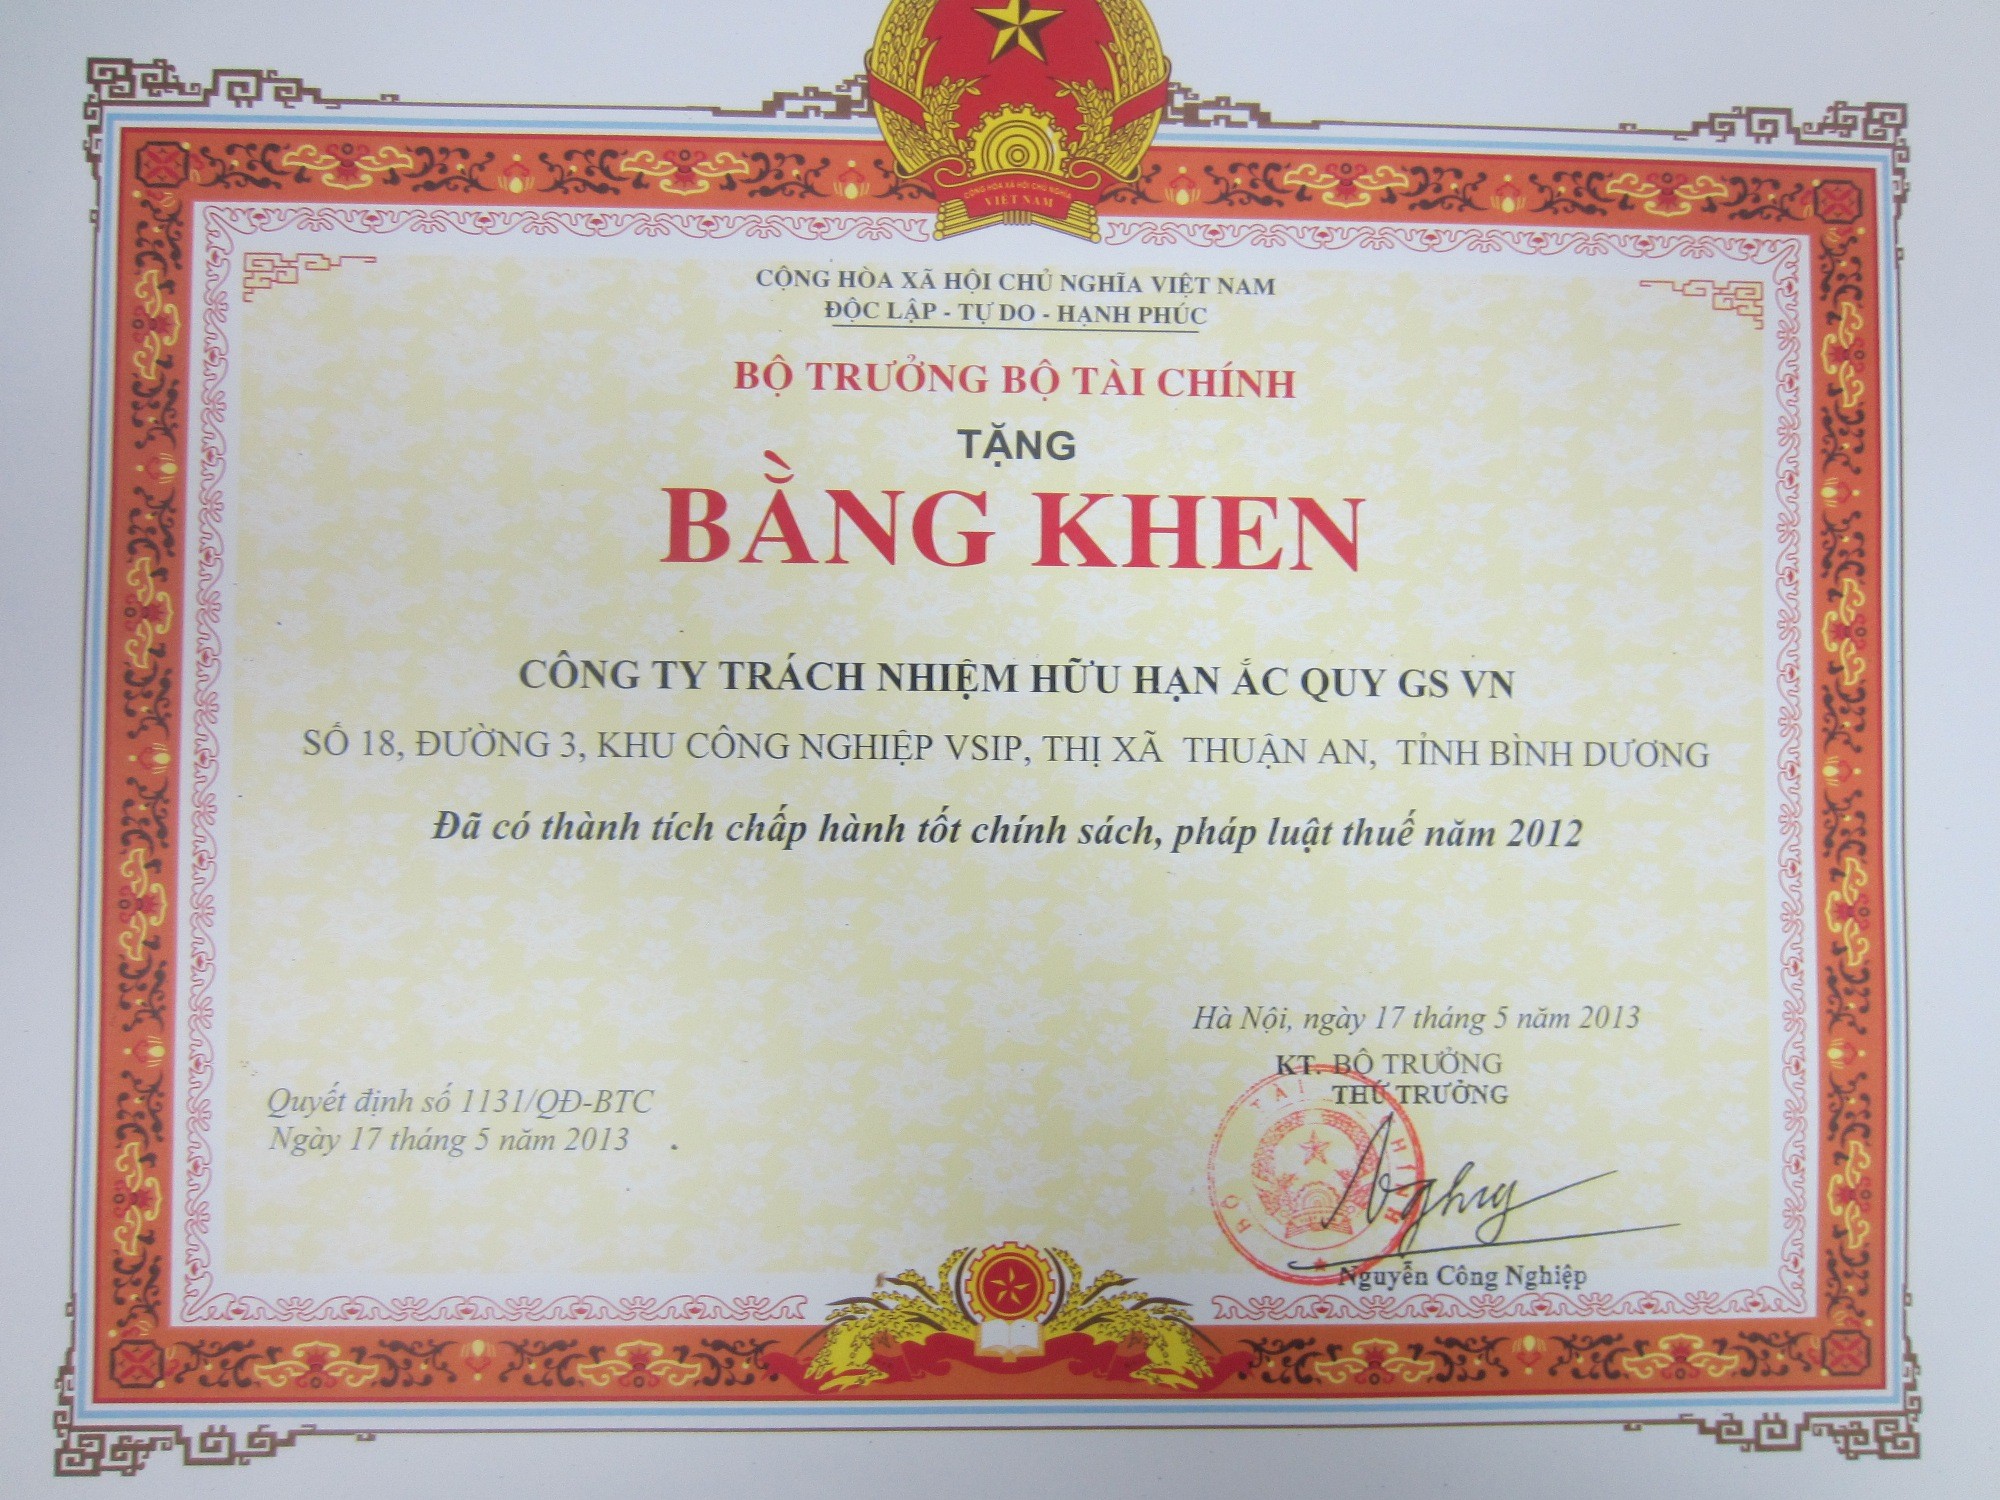 Công Ty TNHH Ắc Quy GS Việt Nam vinh dự nhận bằng khen từ Bộ Trưởng Bộ Tài Chính về thành tích chấp hành tốt chính sách pháp luật thuế năm 2012.